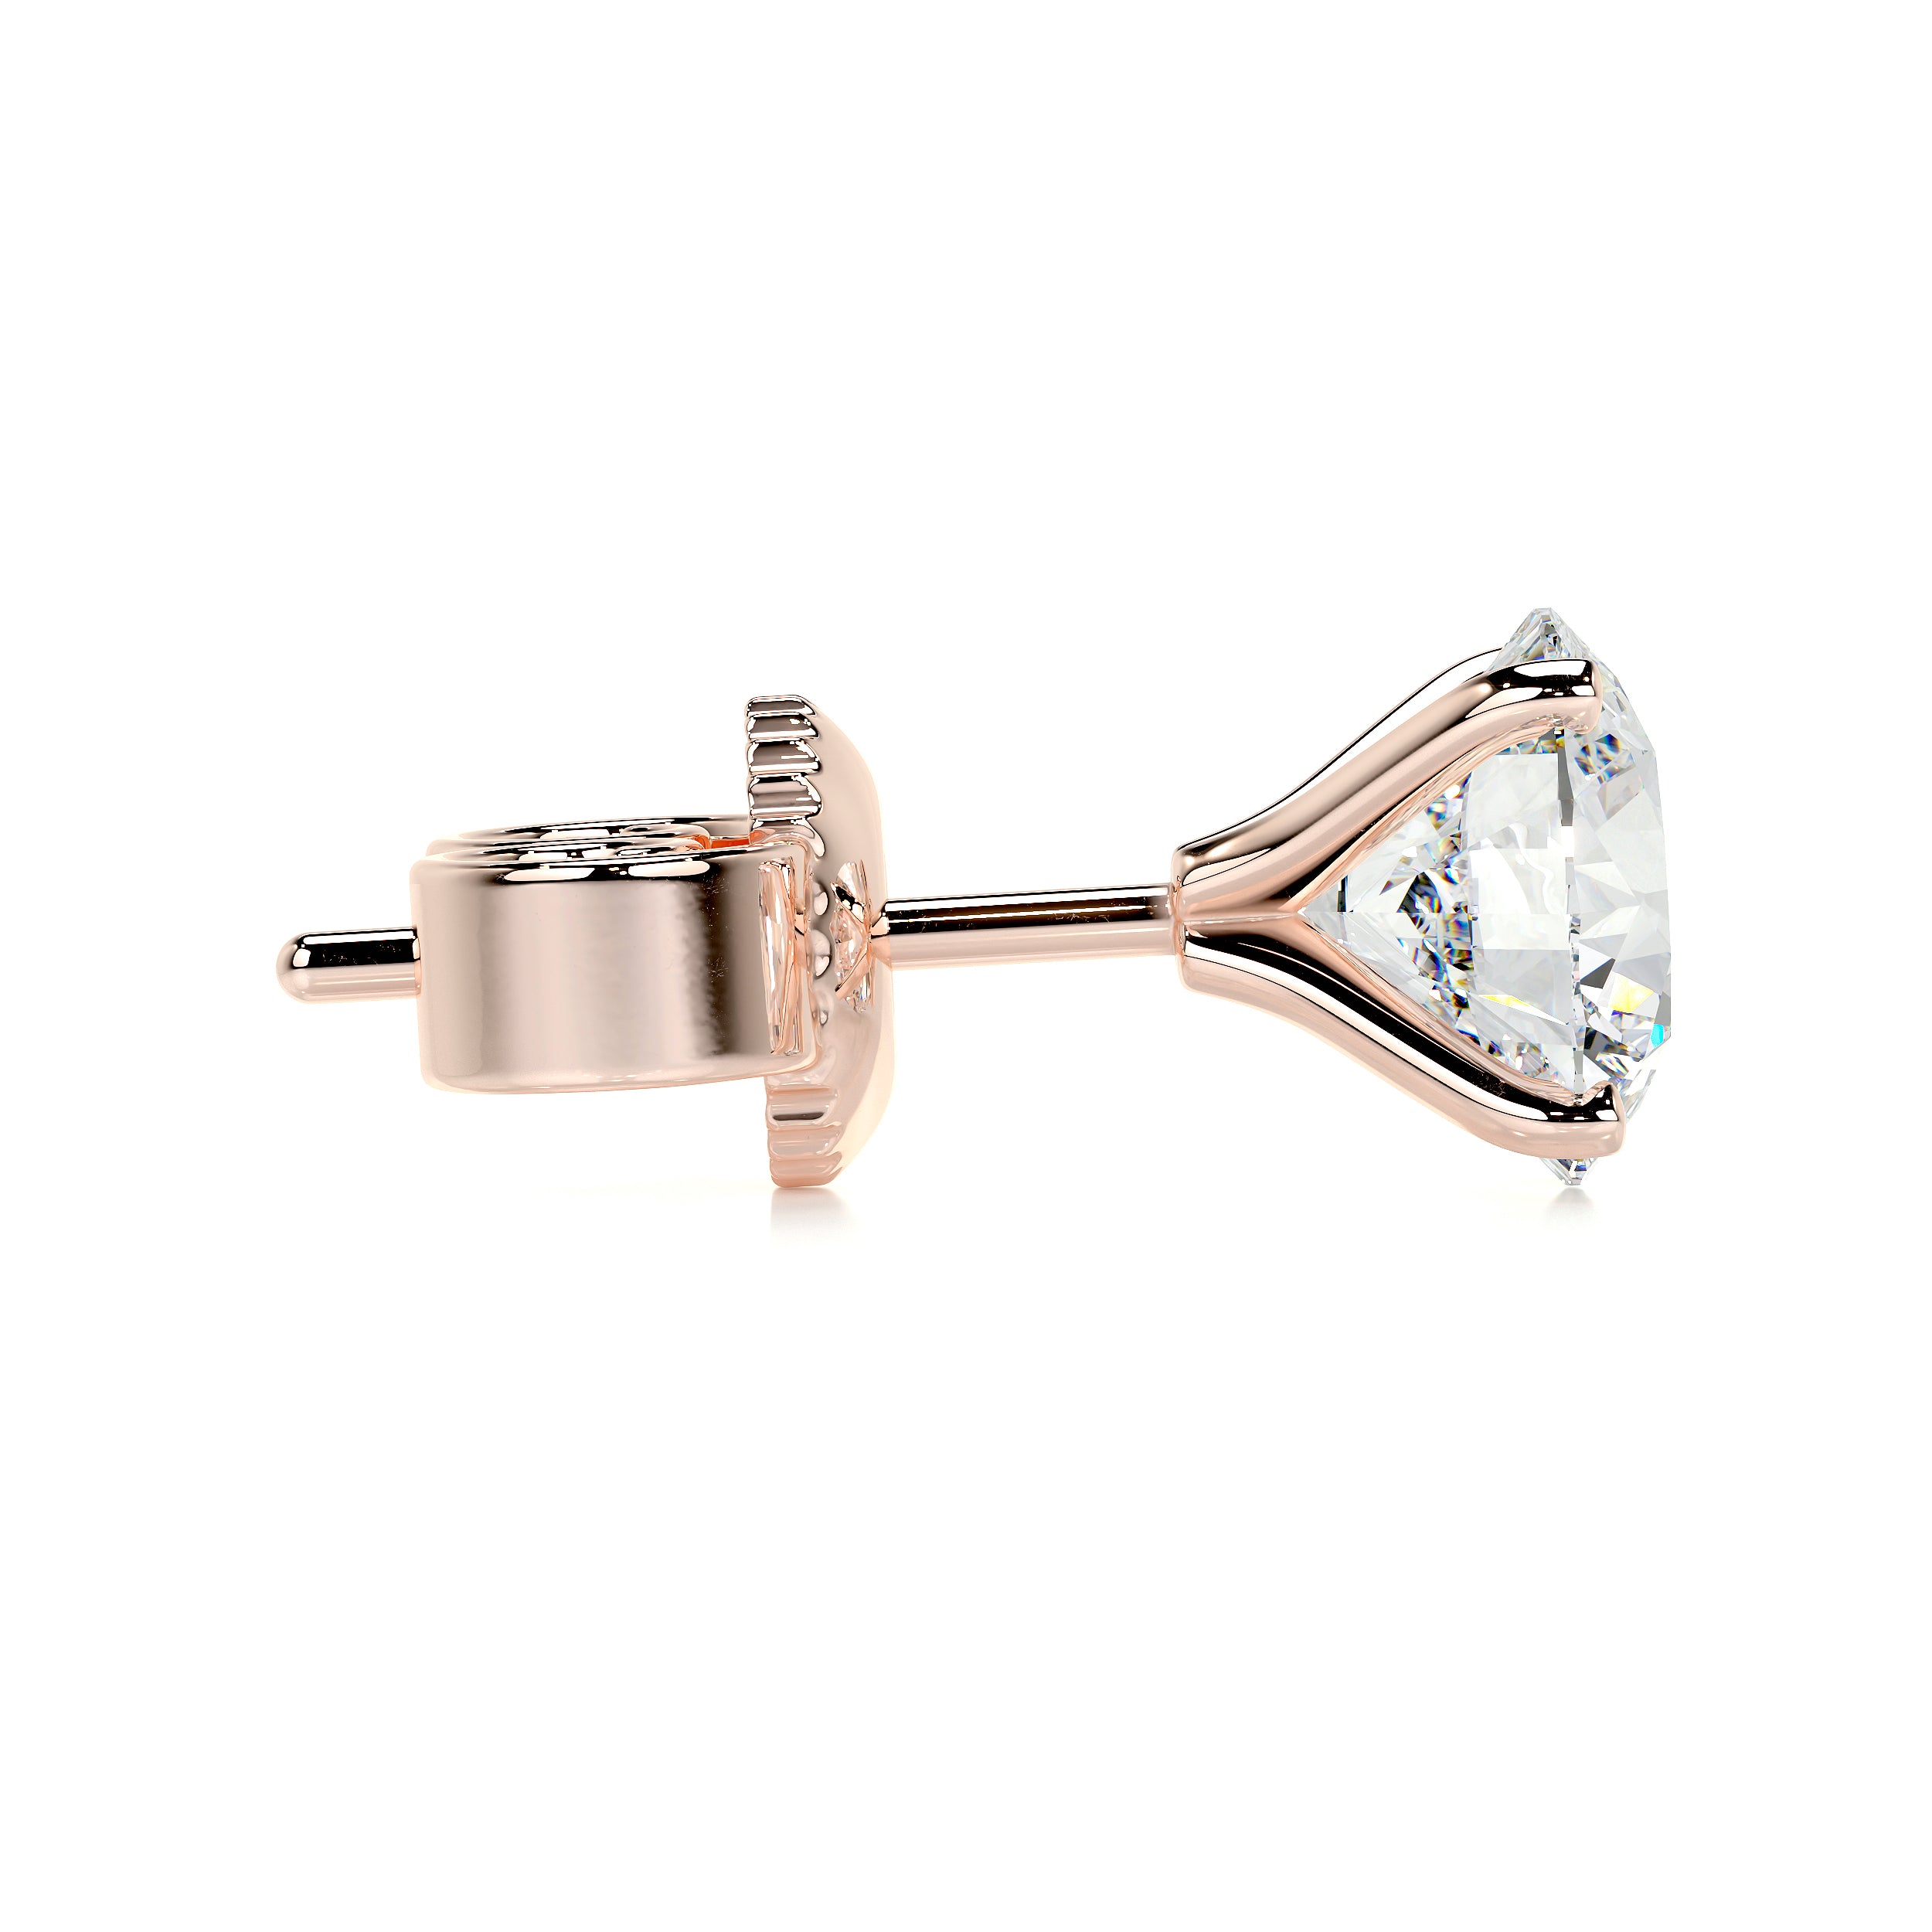 Allen Lab Grown Diamond Earrings   (6 Carat) -14K Rose Gold